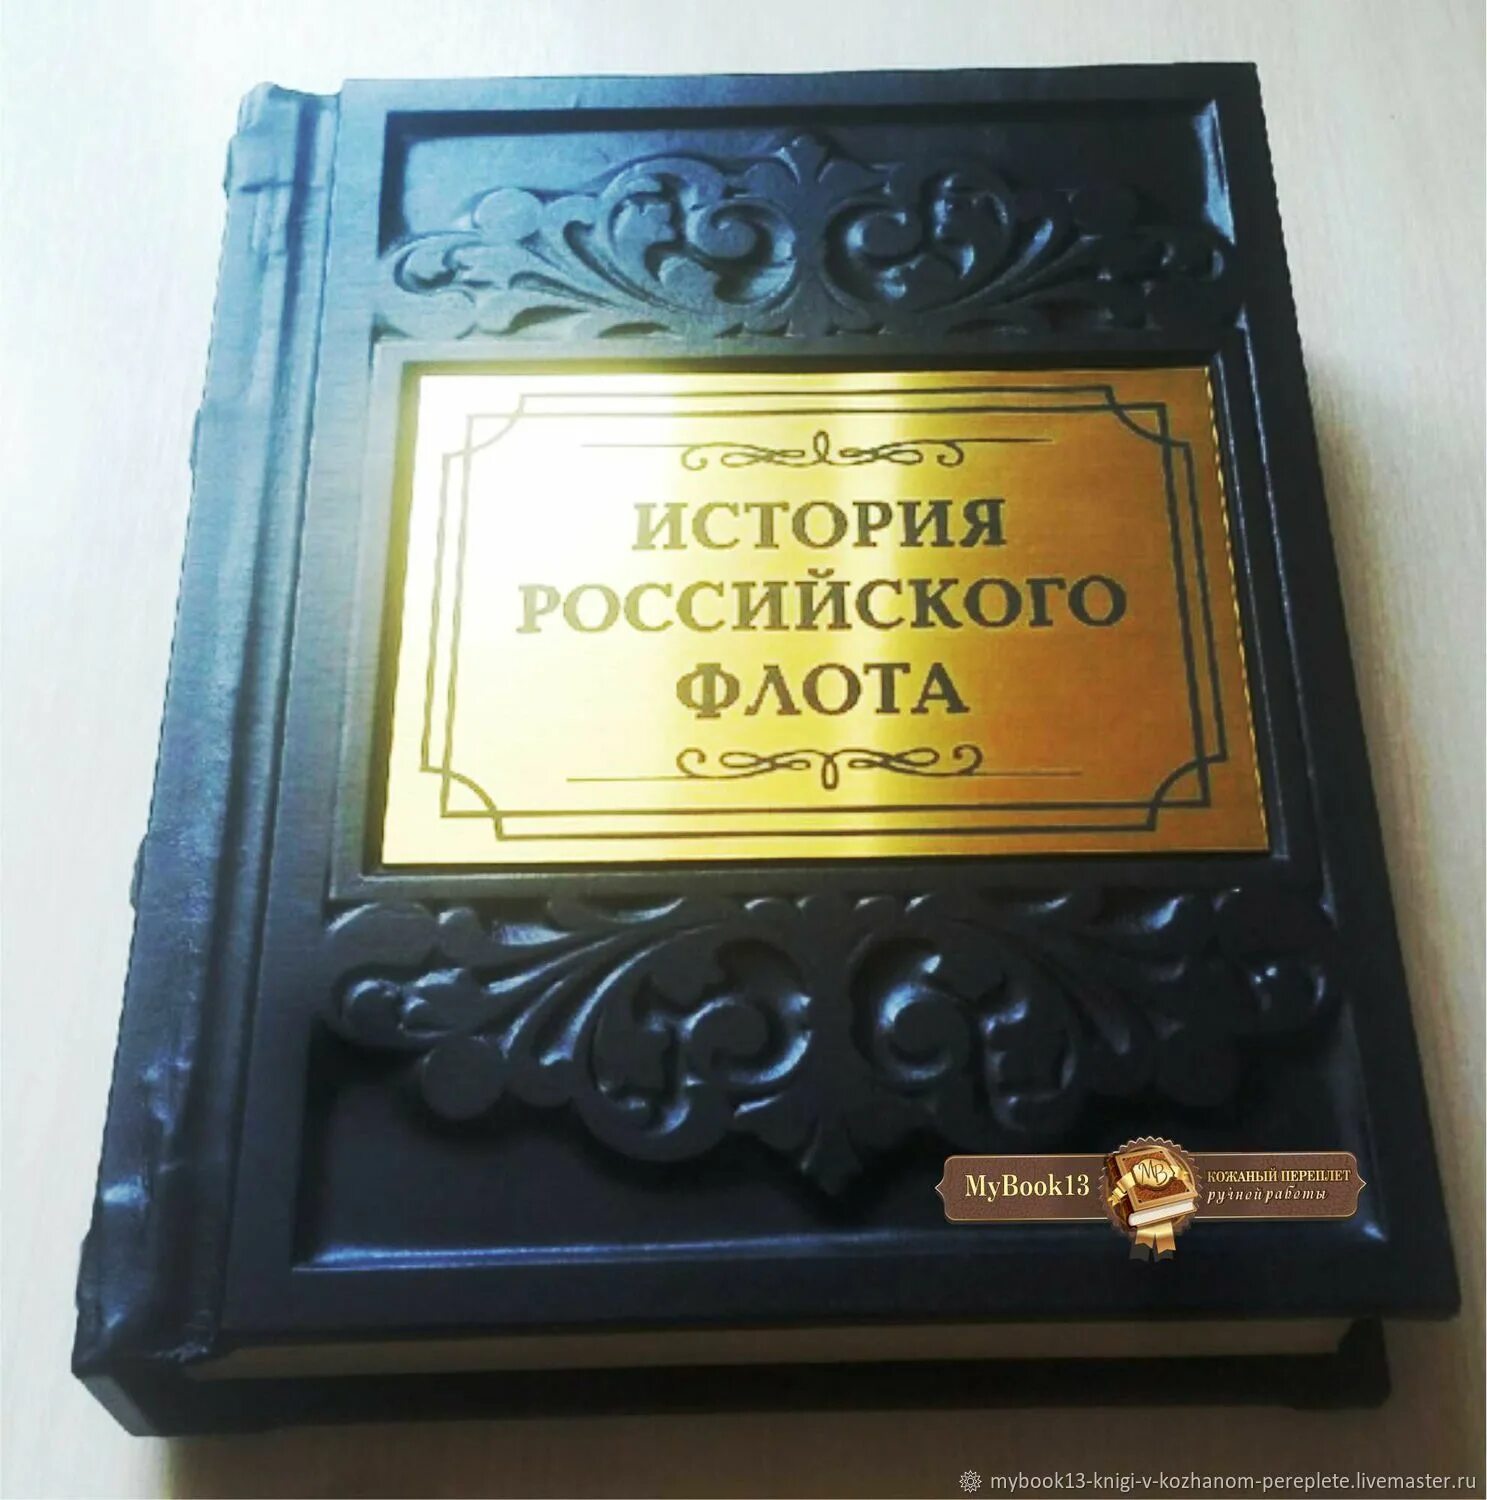 История россии книги отзывы